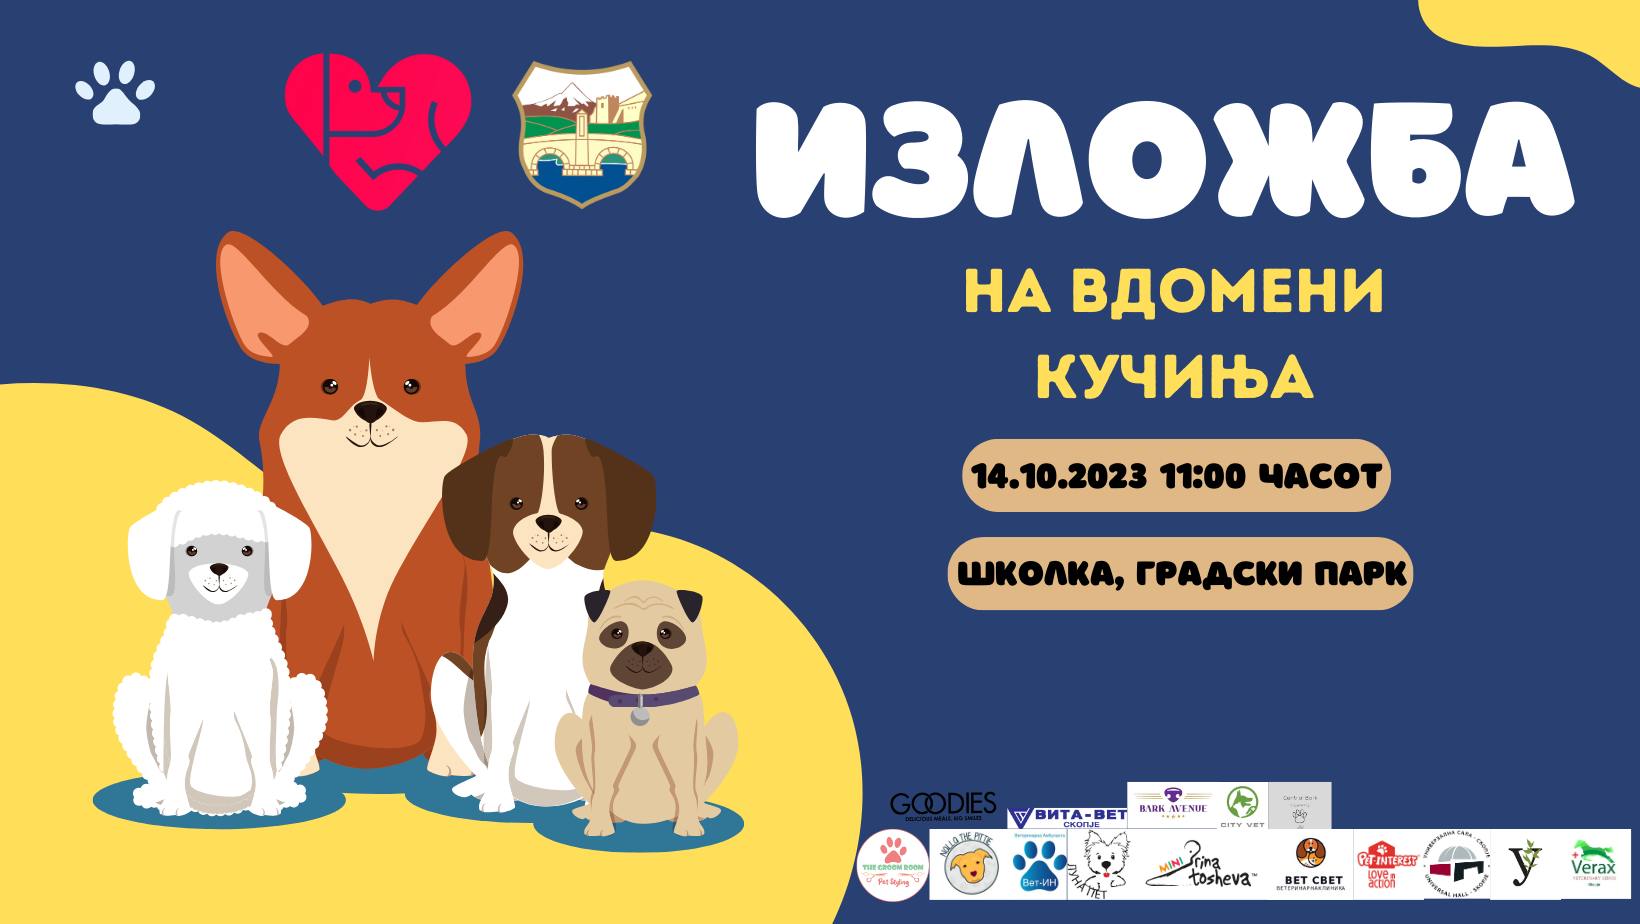 ЈП Лајка организира „Изложба на вдомени кучиња“ по повод 3-от роденден